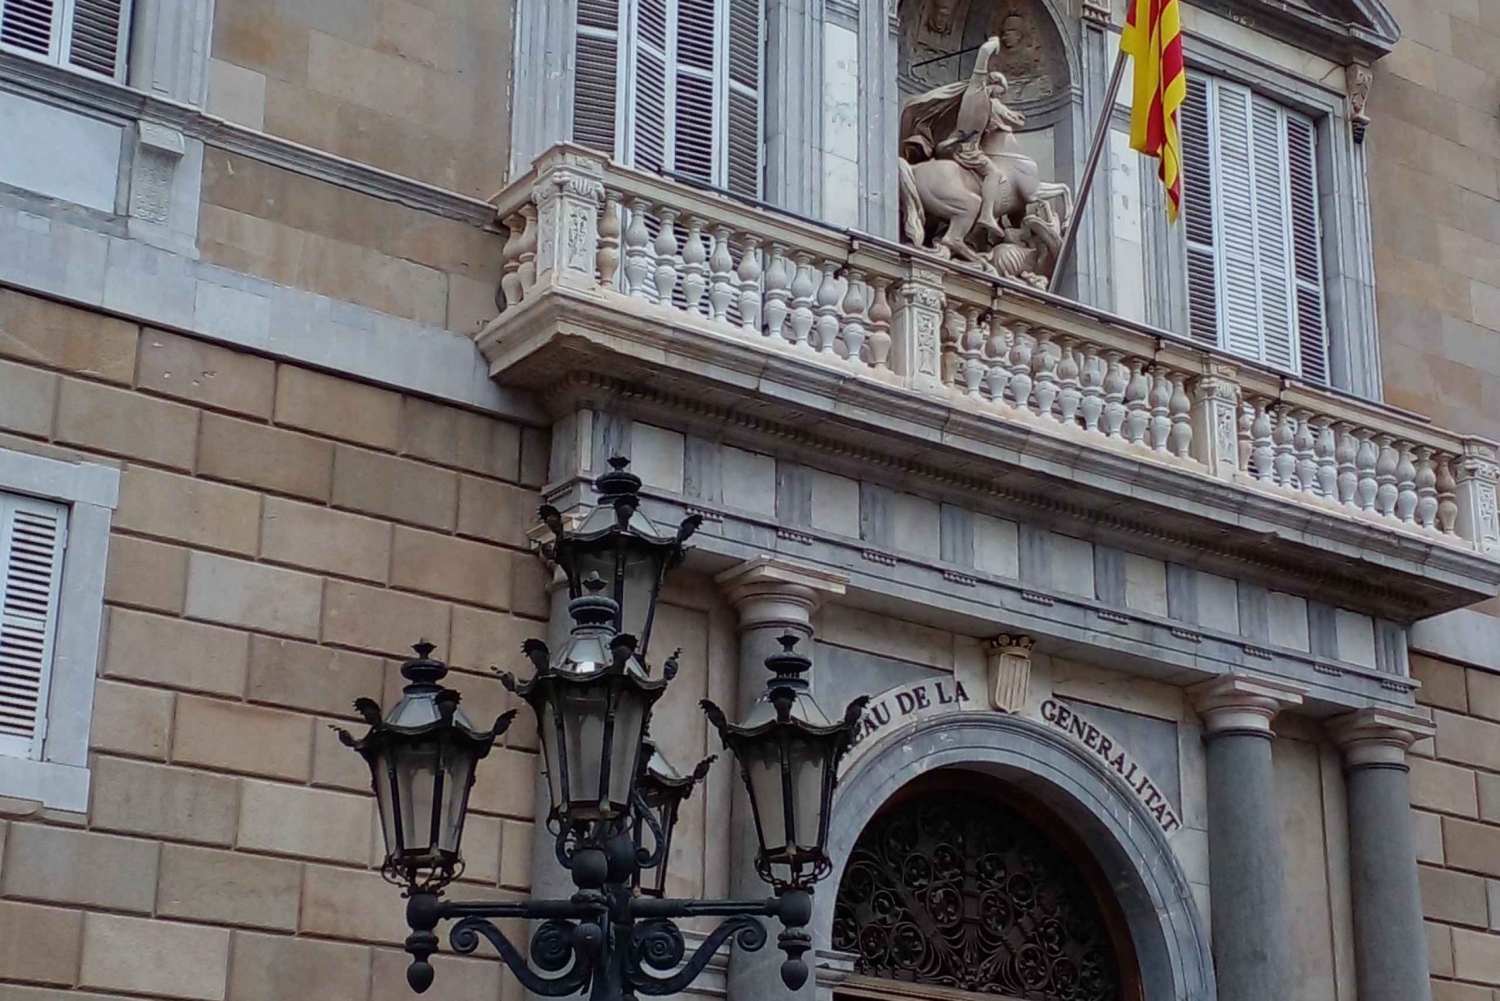 Historia och escondidas i Barcelona